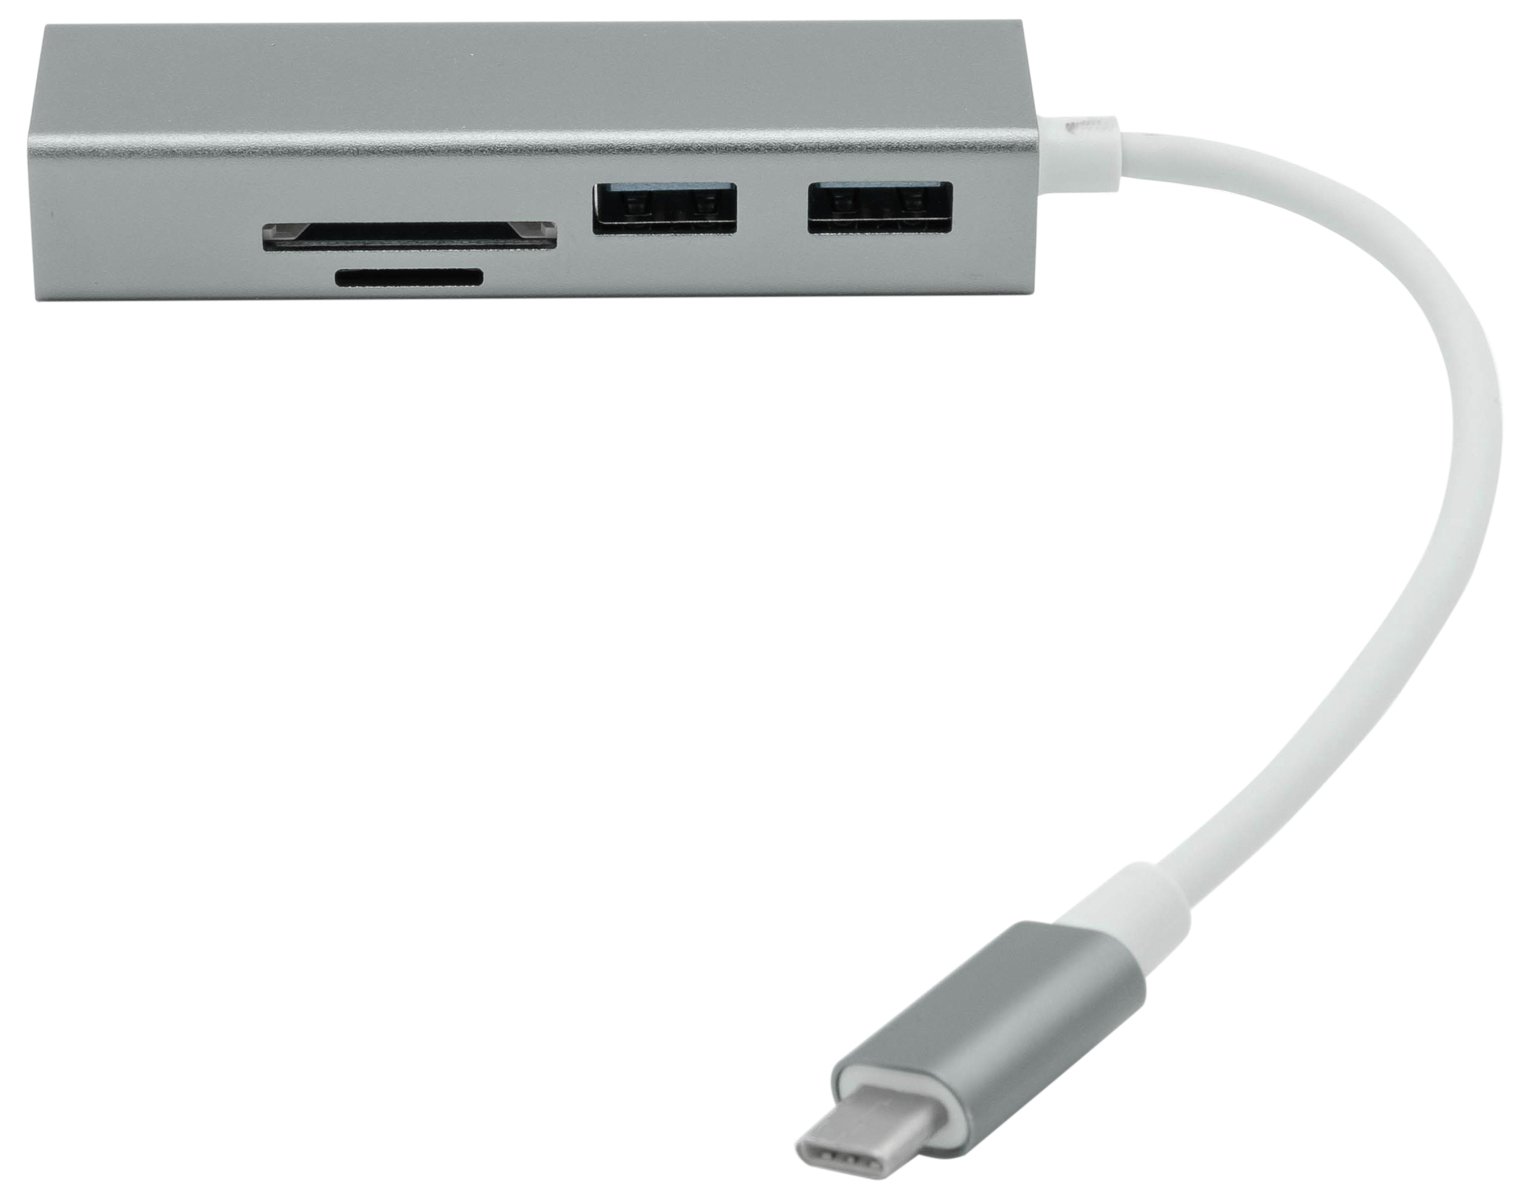 Dynamode USB-C 5 Port Hub with Card Reader